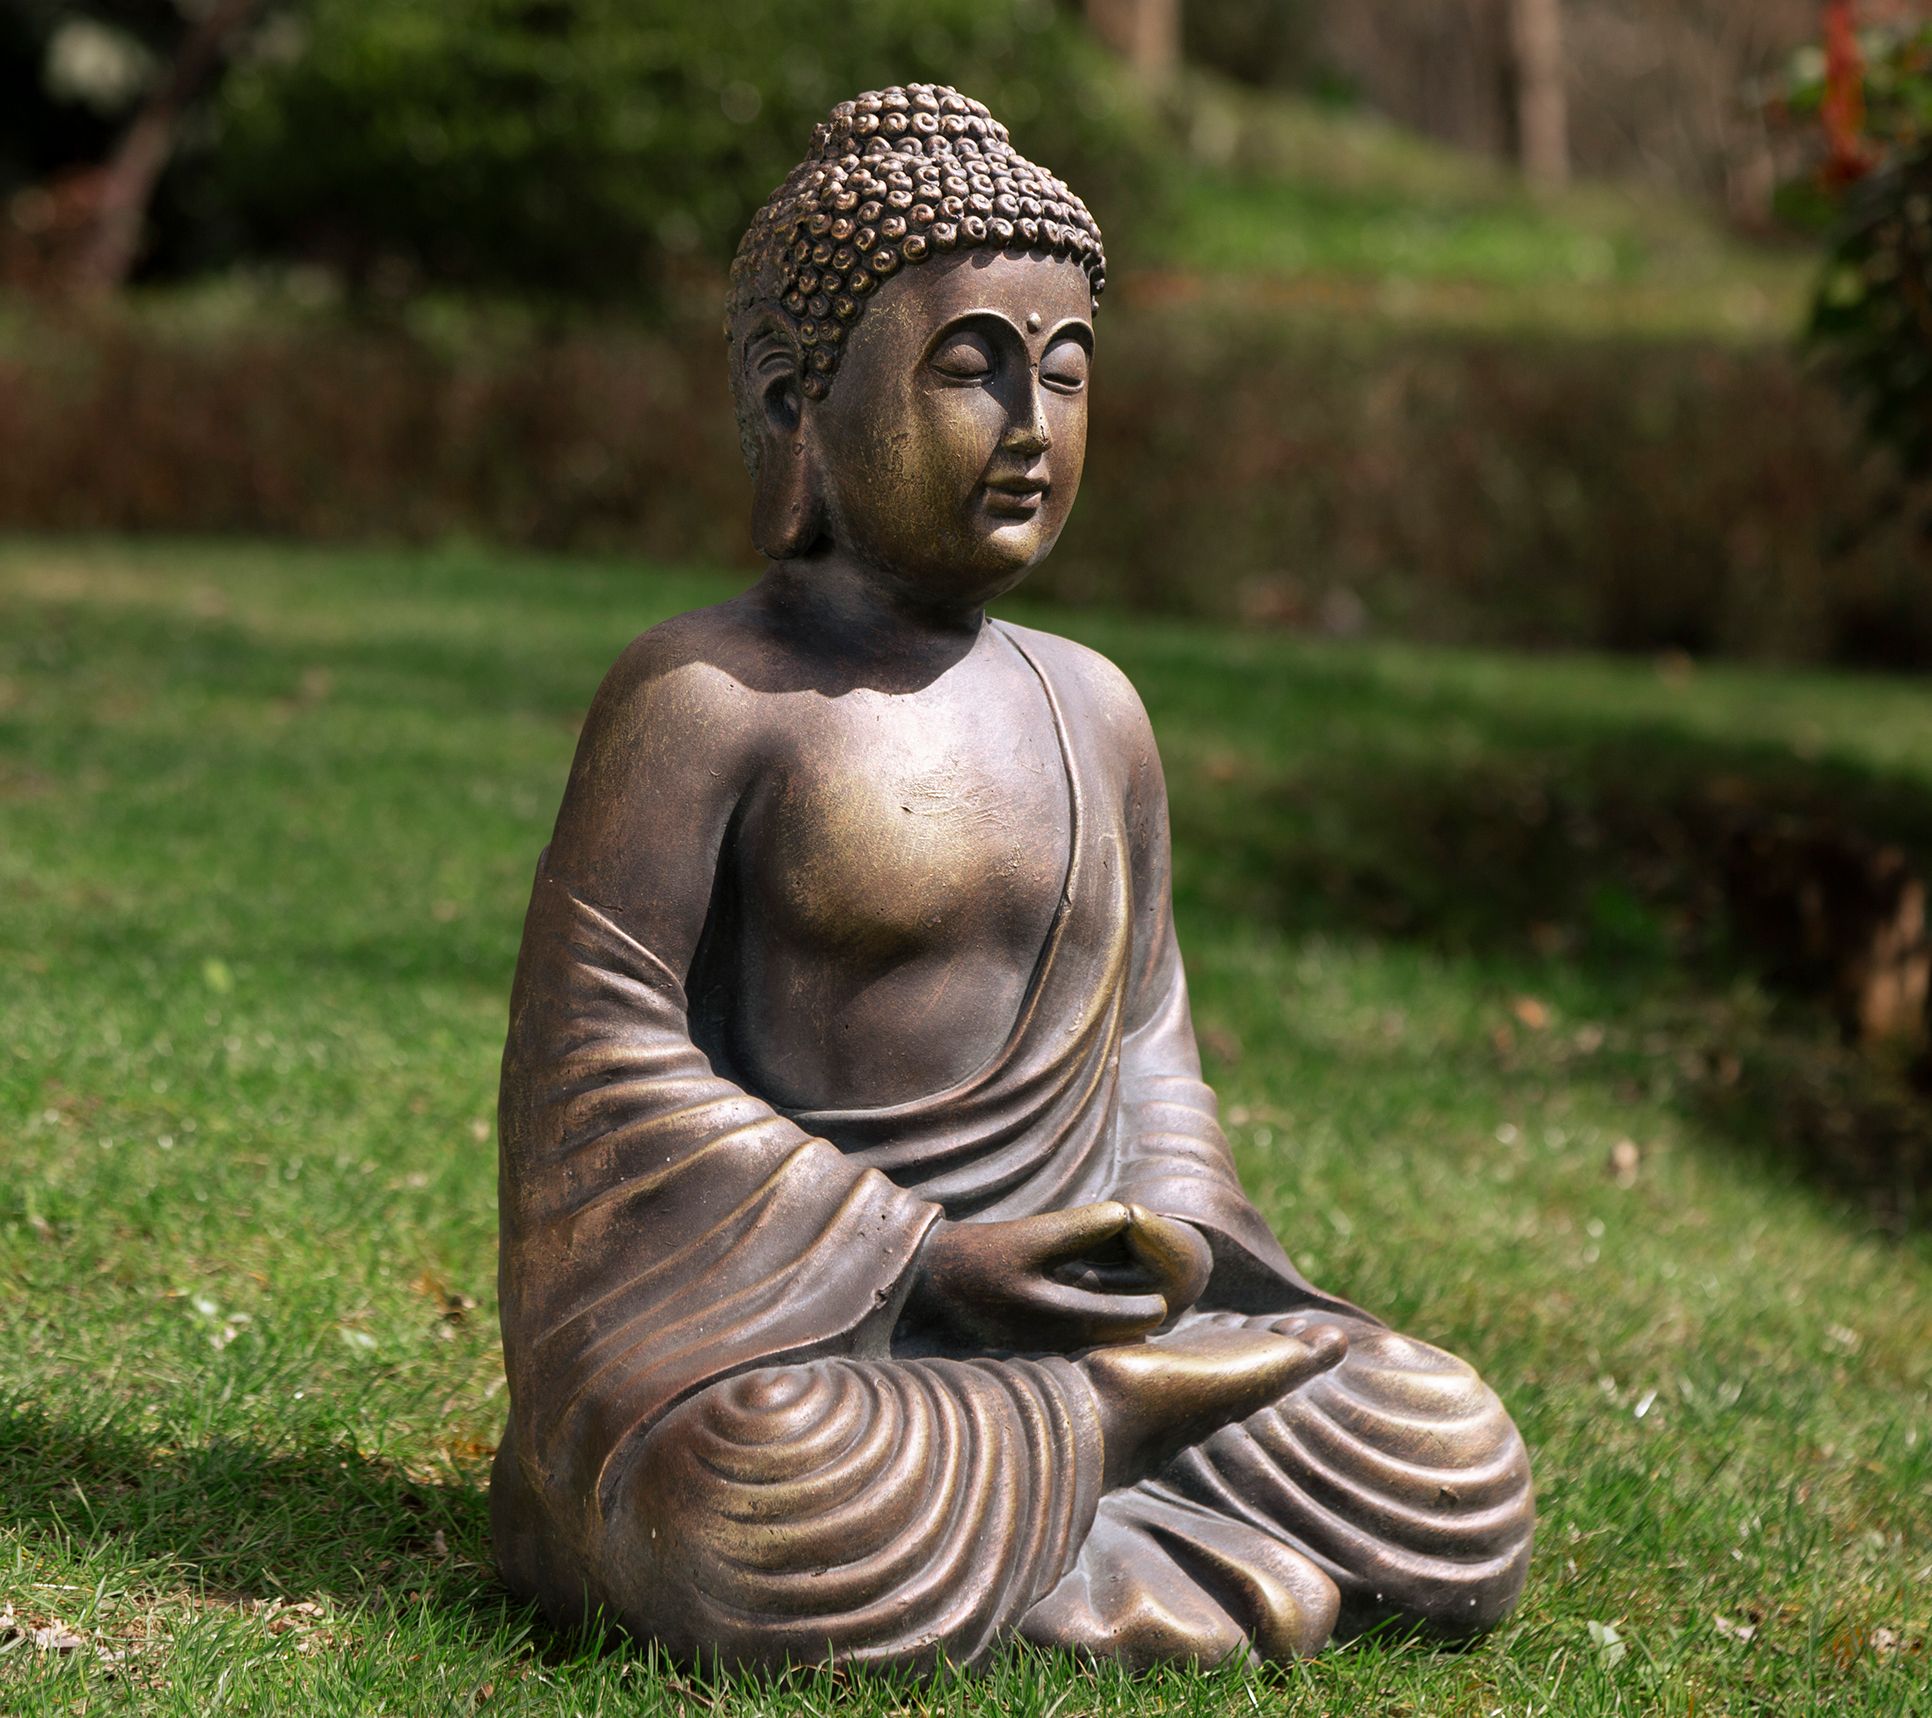 Glitzhome Meditating Zen Buddha Lawn Garden Sta tue - Medium - QVC.com